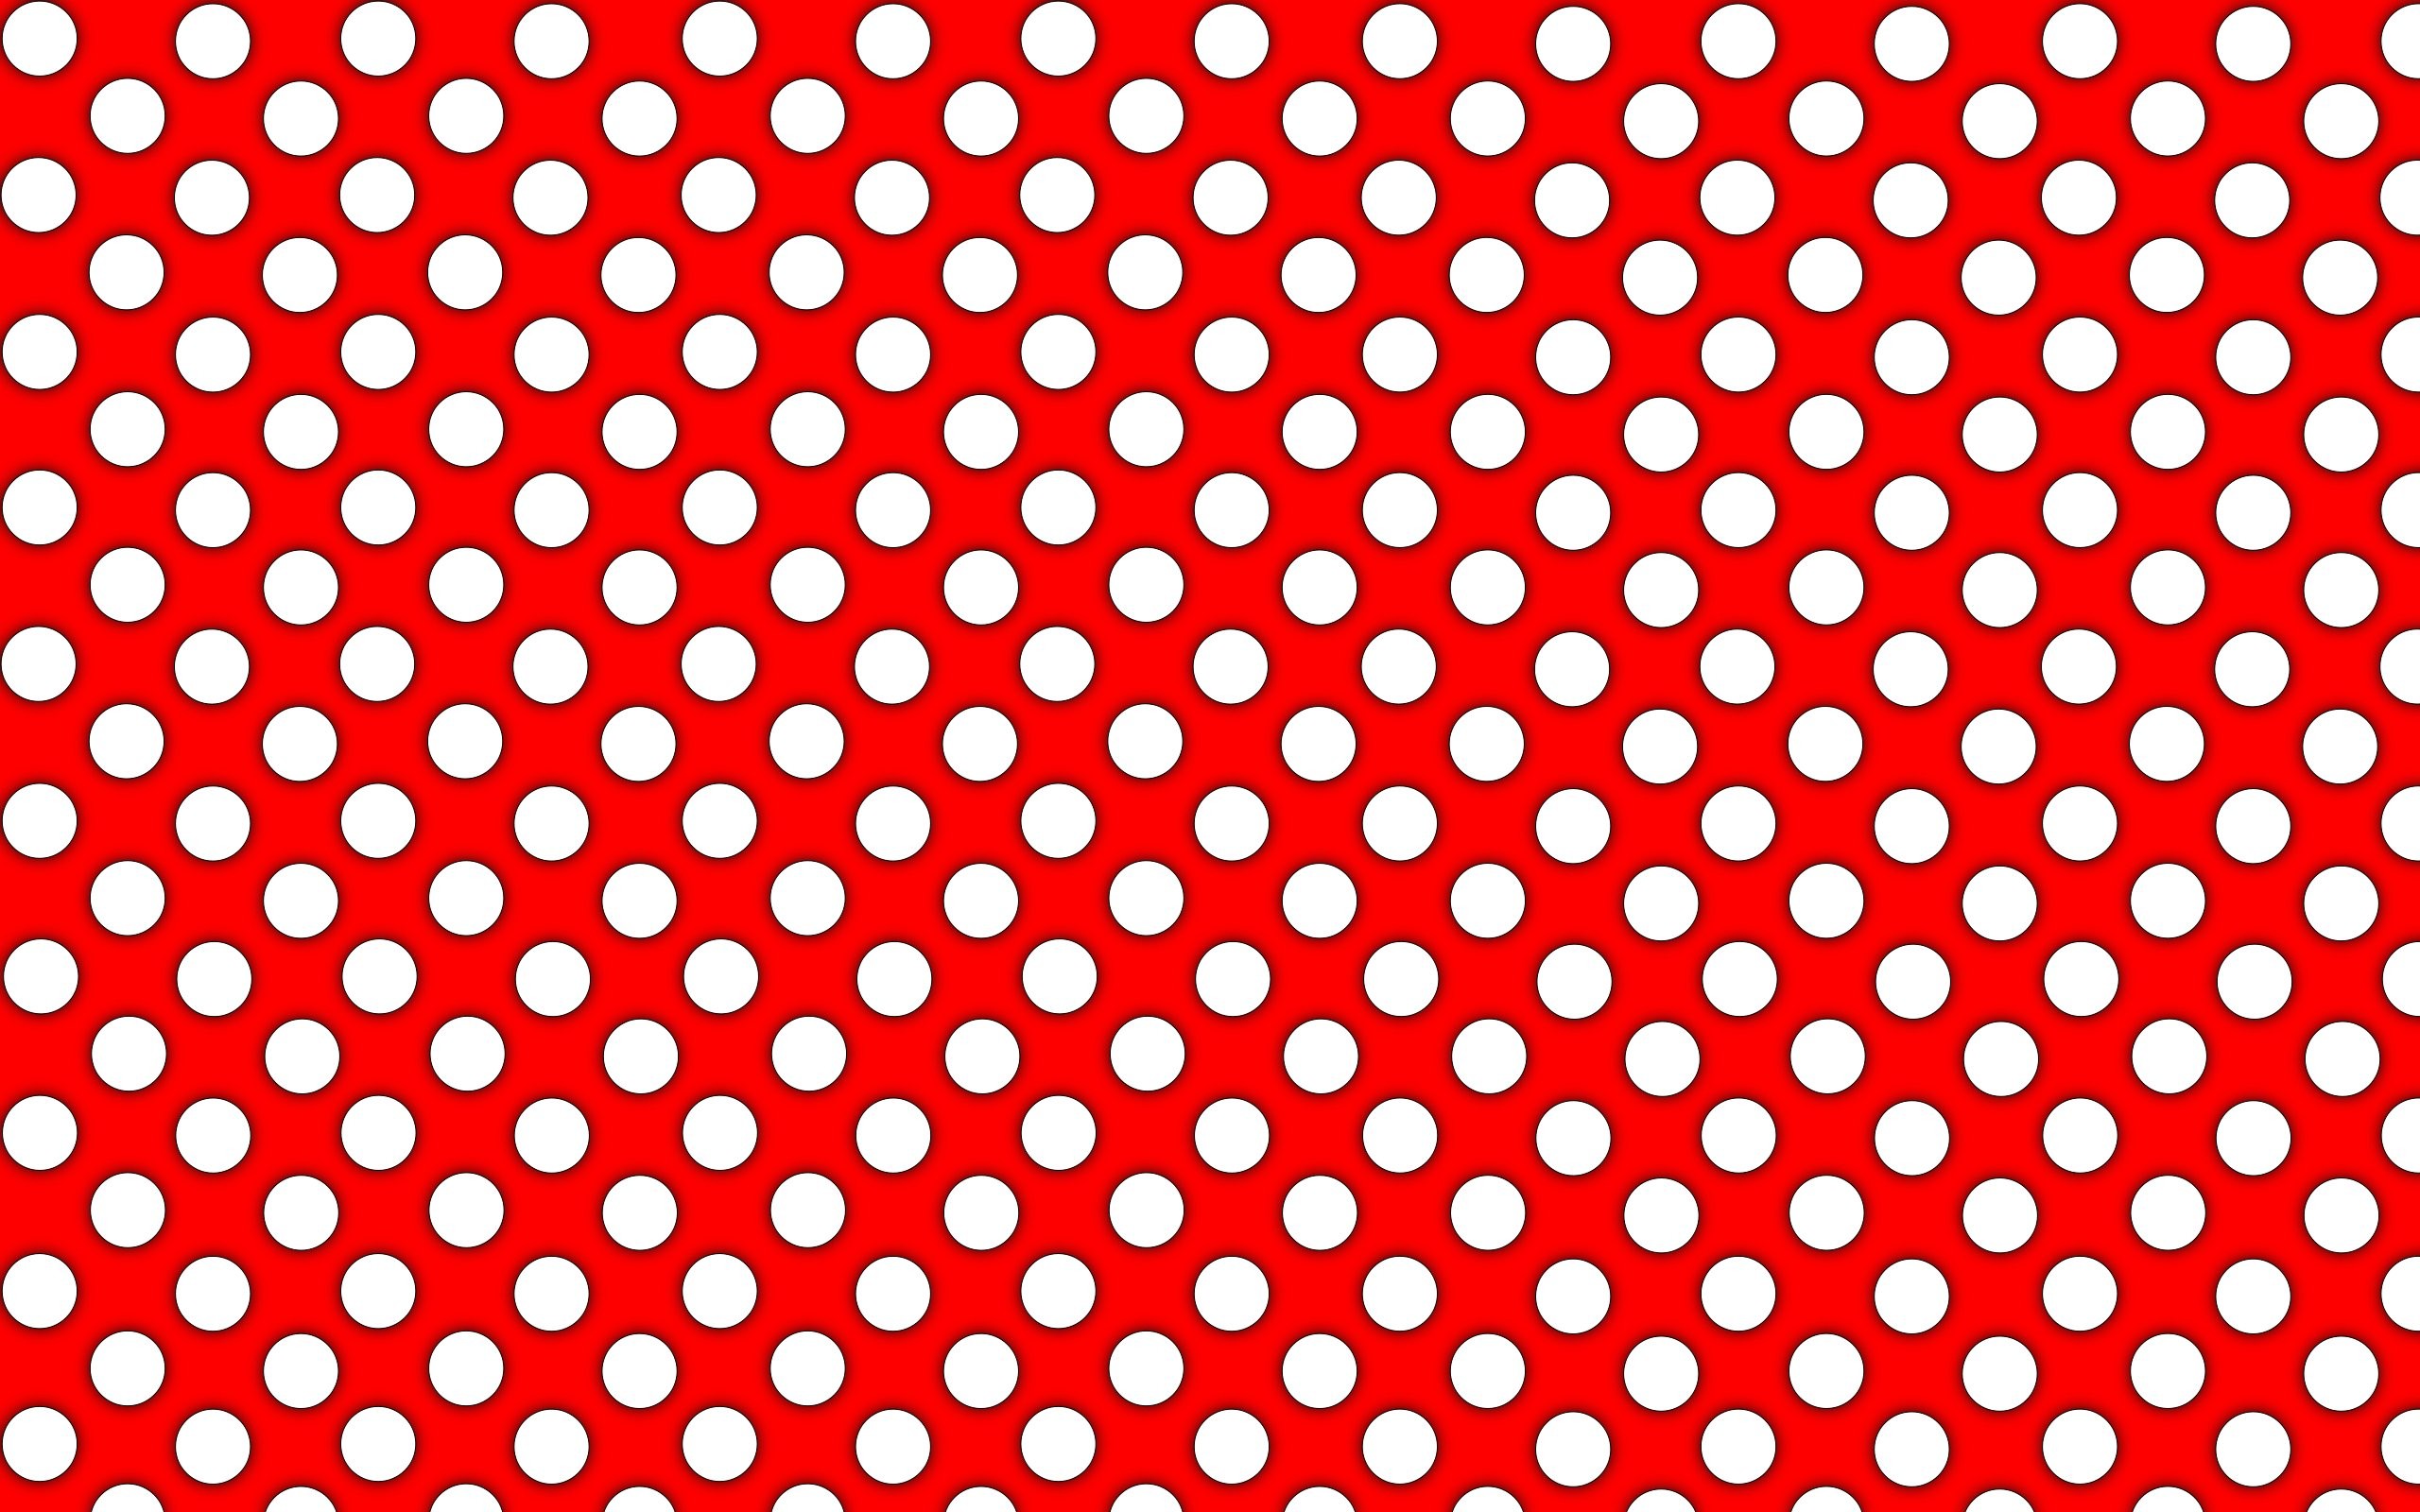 2560x1600 Polka Dot Wallpaper